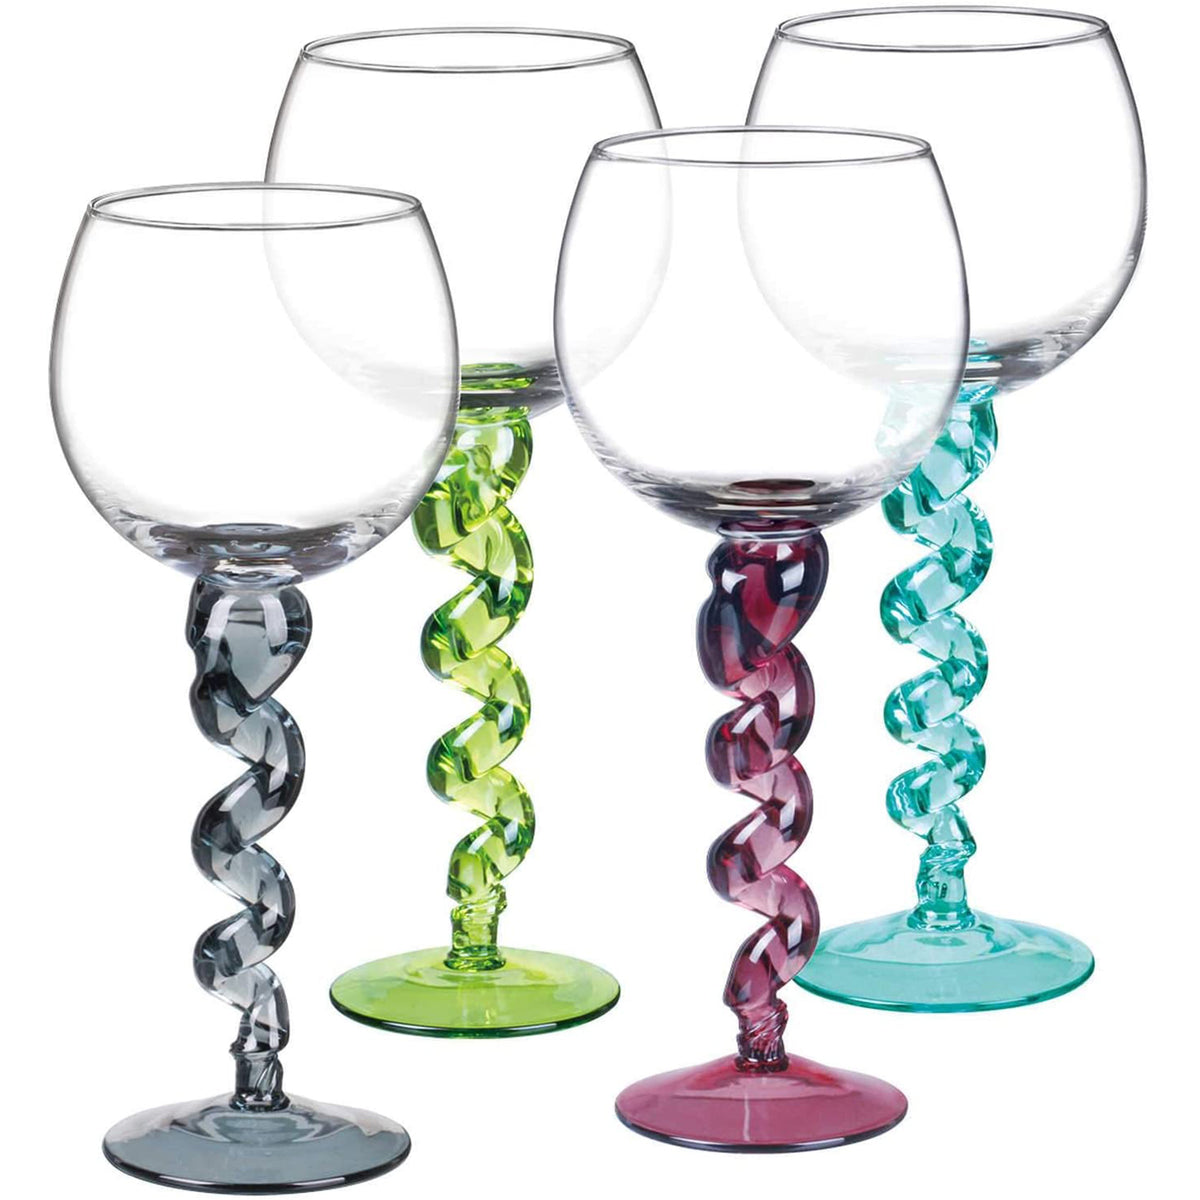 Disco Design Wine Glassesunique Wine Glassesparty Wine Glassesfunky Wine  Glassesdisco Wine Glassescouples Wine Glasses21st Bday Glass 